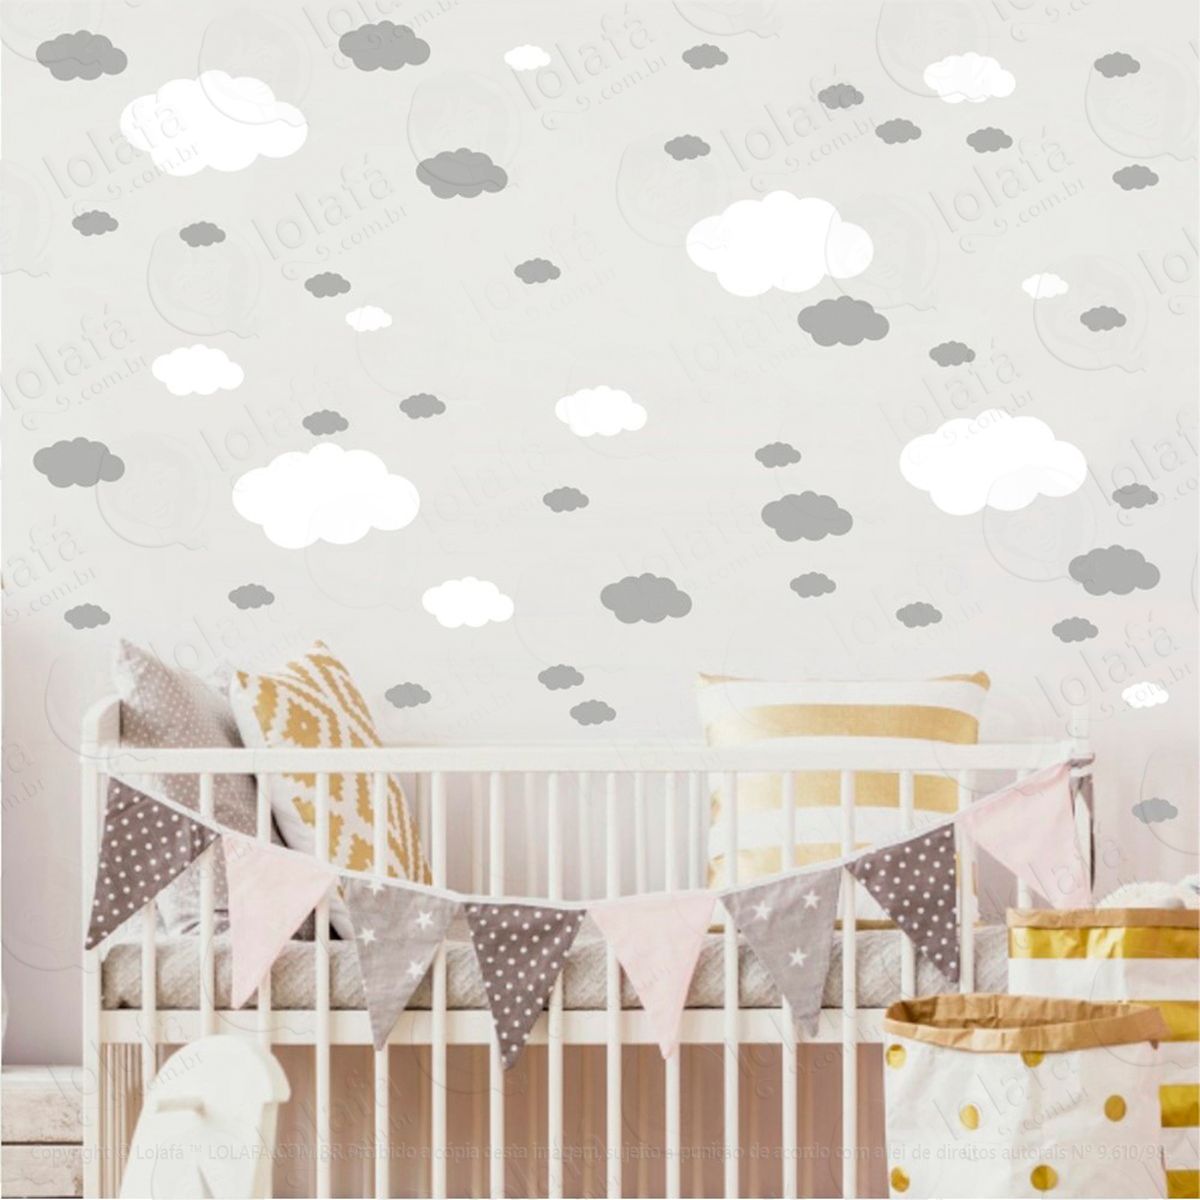 adesivos nuvens 62 peças adesivos para quarto de bebê infantil - mod:1083